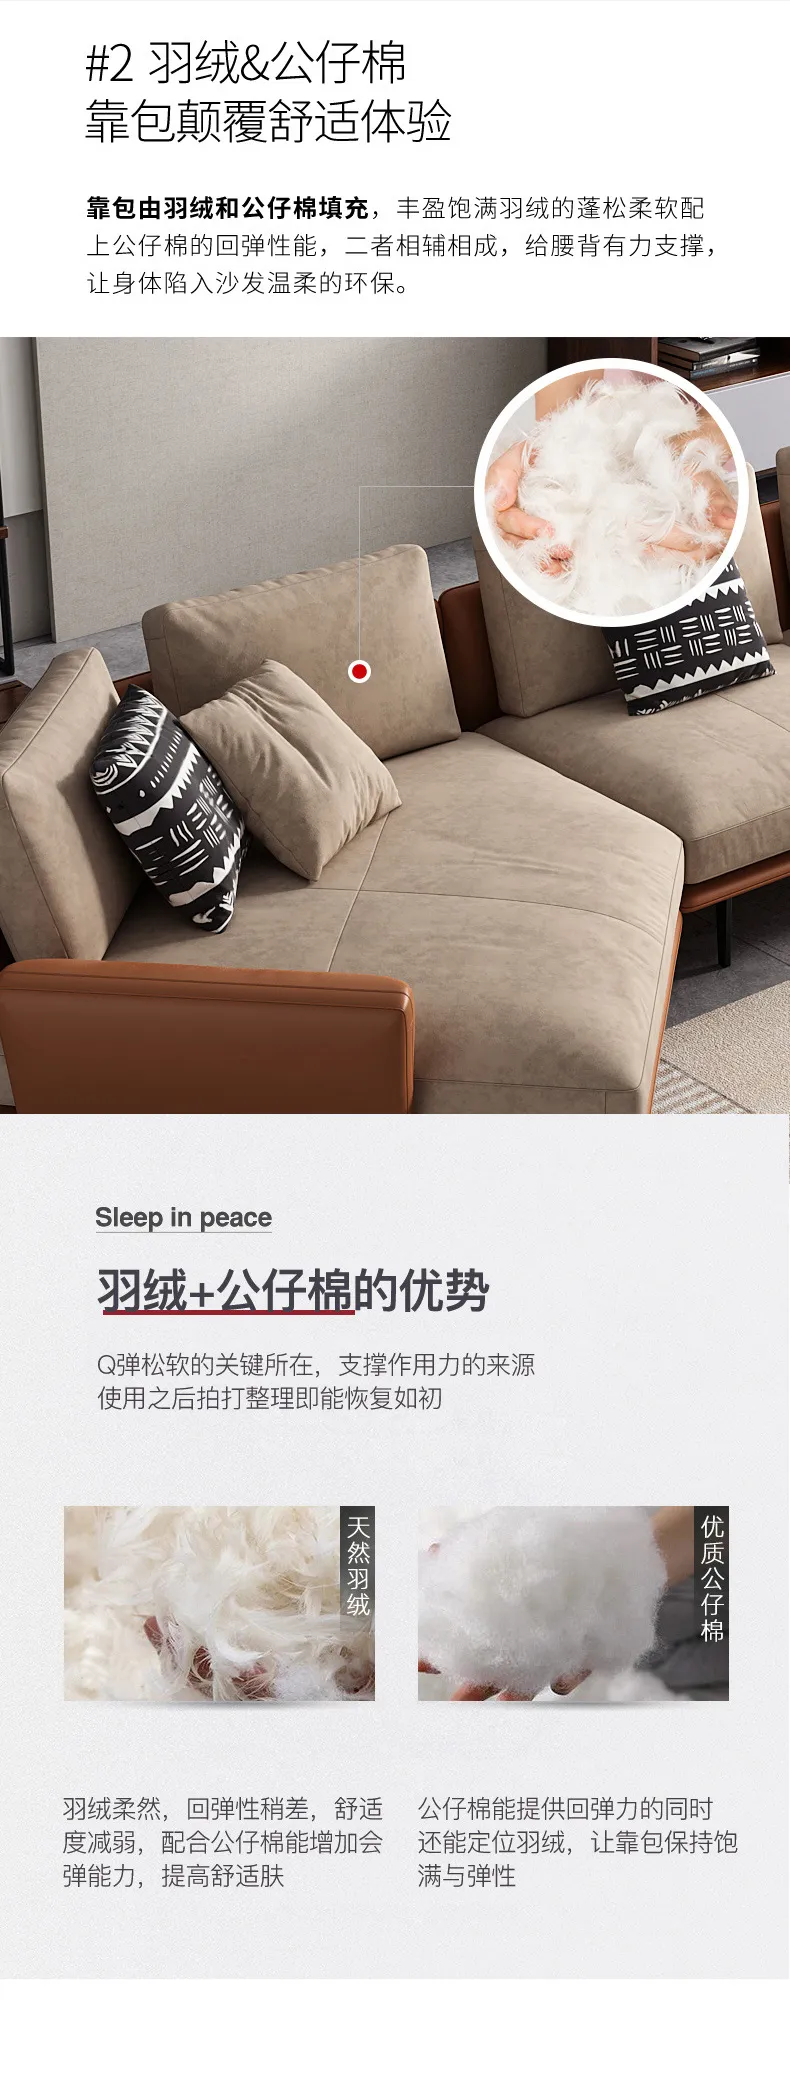 华松居 意式布艺沙发客厅免洗简约科技布沙发极简沙发2077-23(图3)